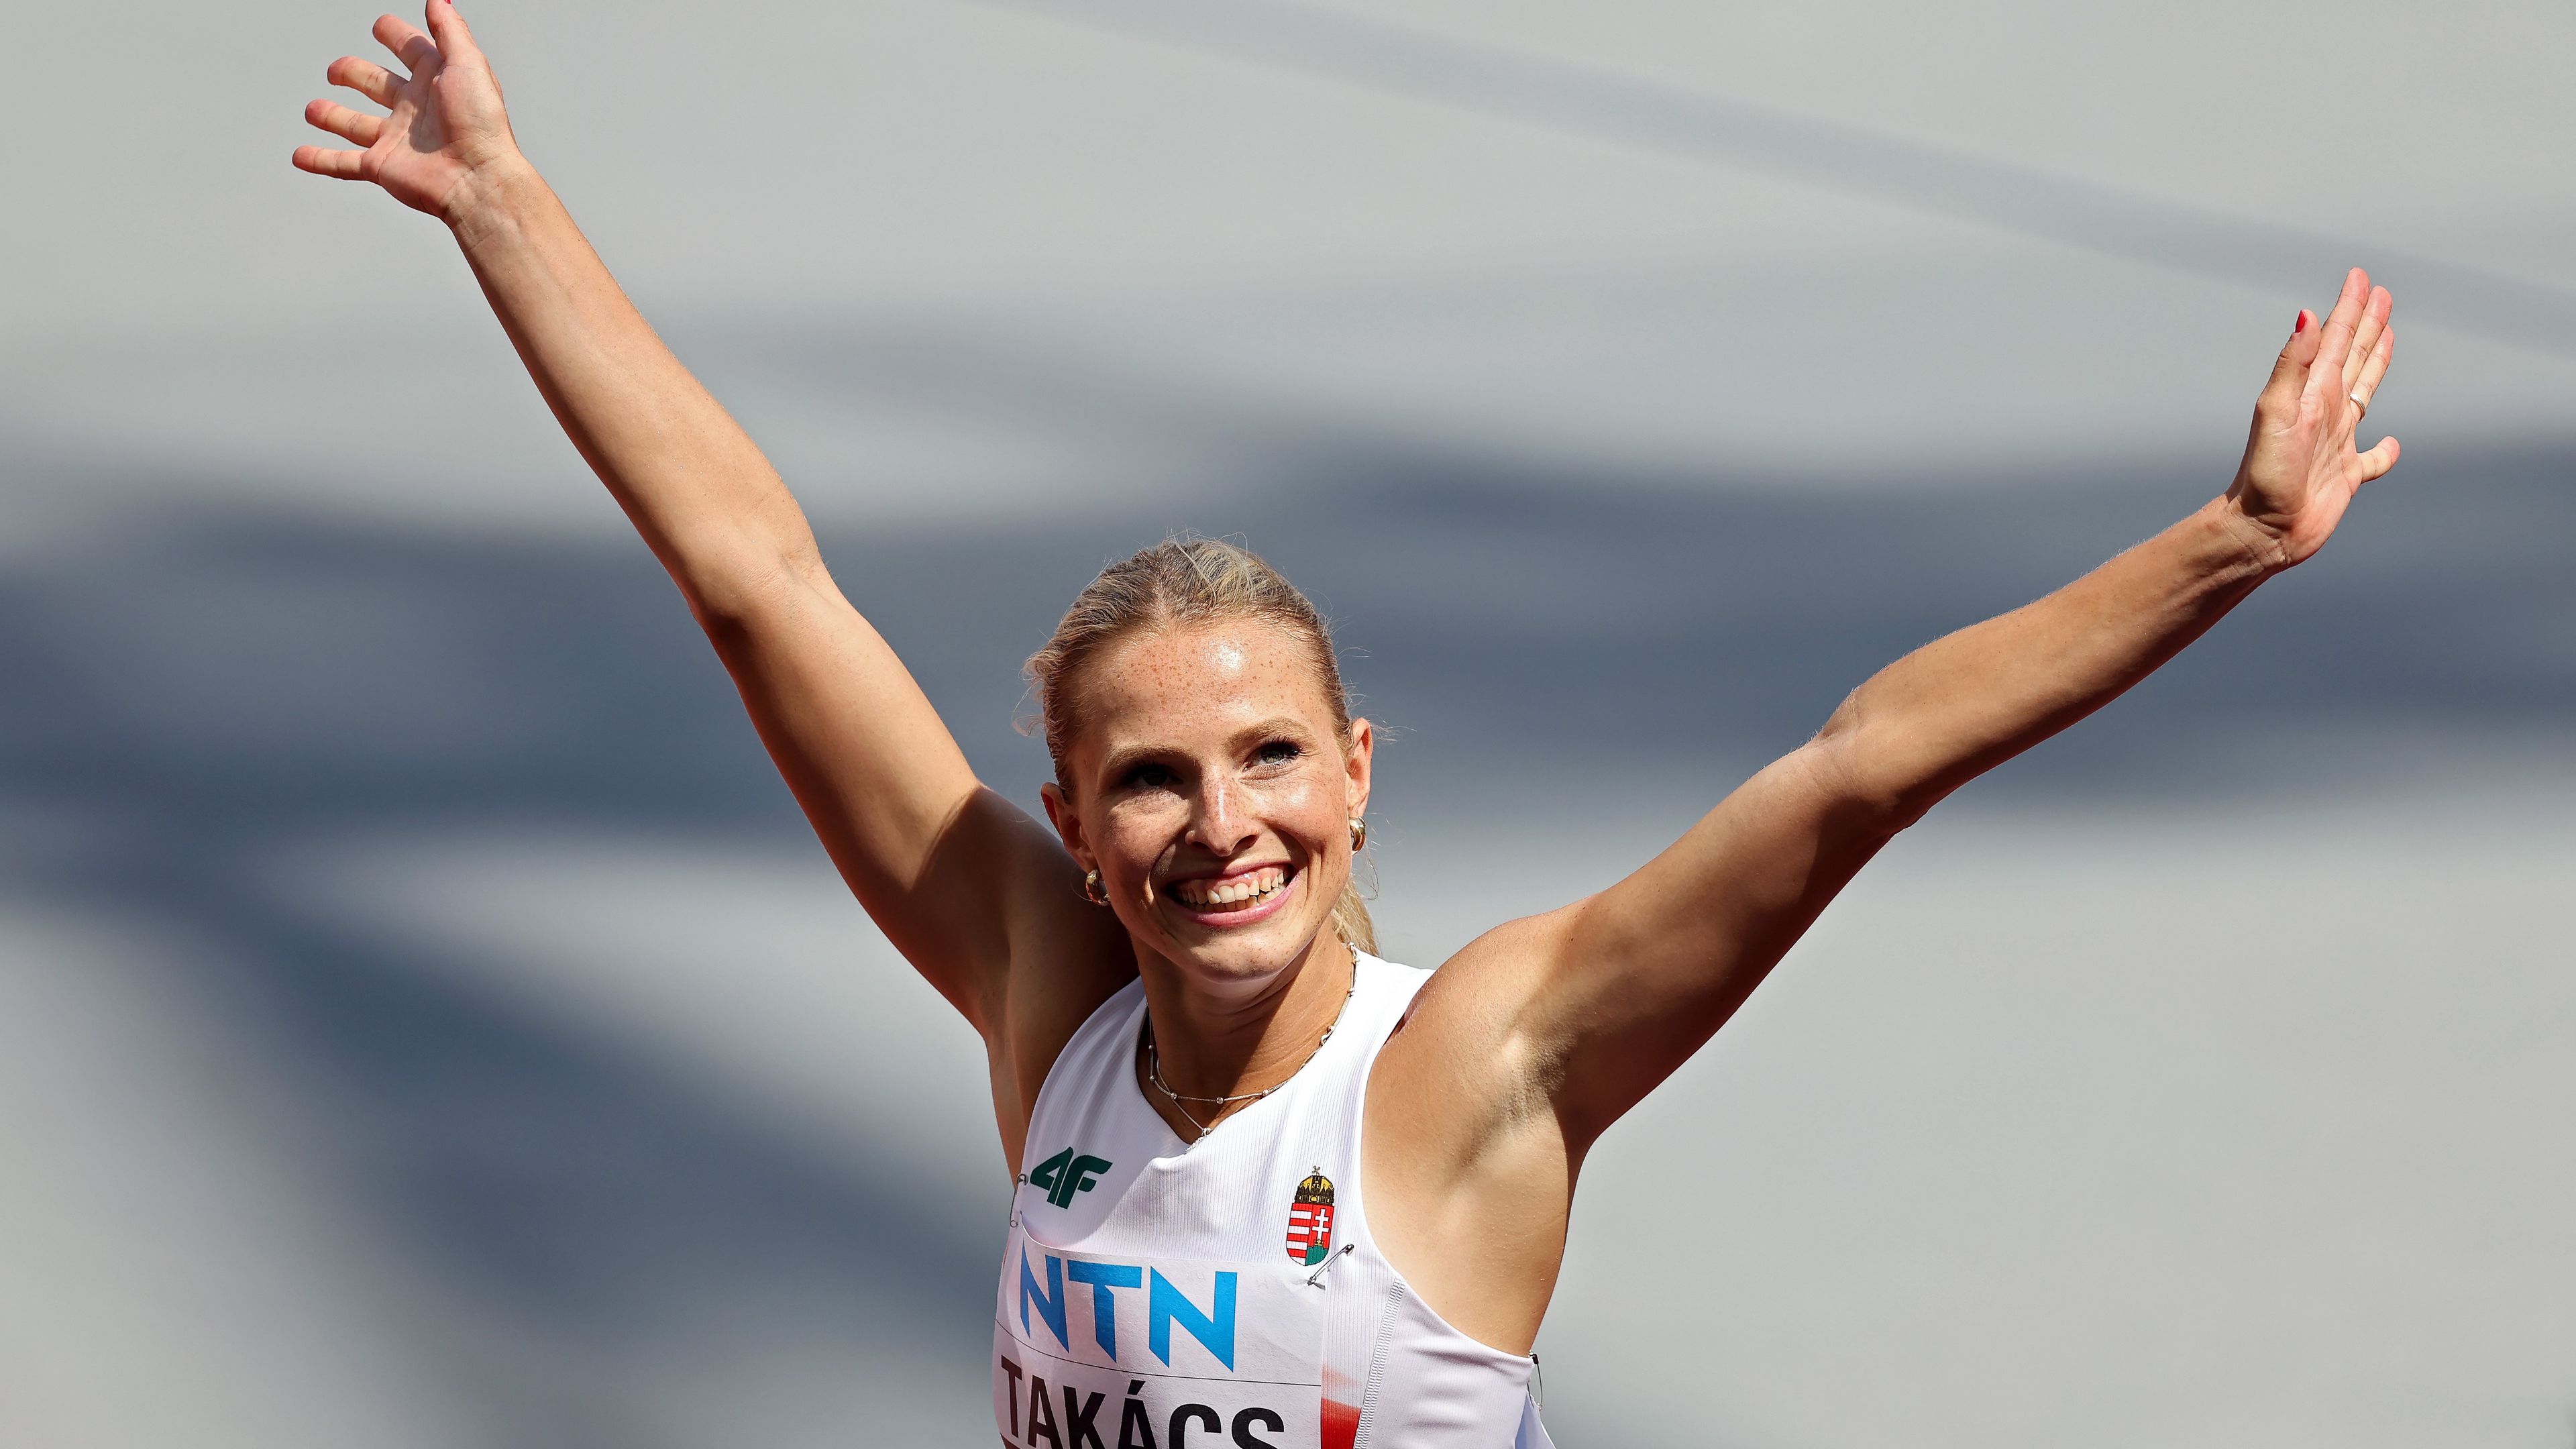 Harmincéves országos csúcsot döntött meg a magyar sprinter